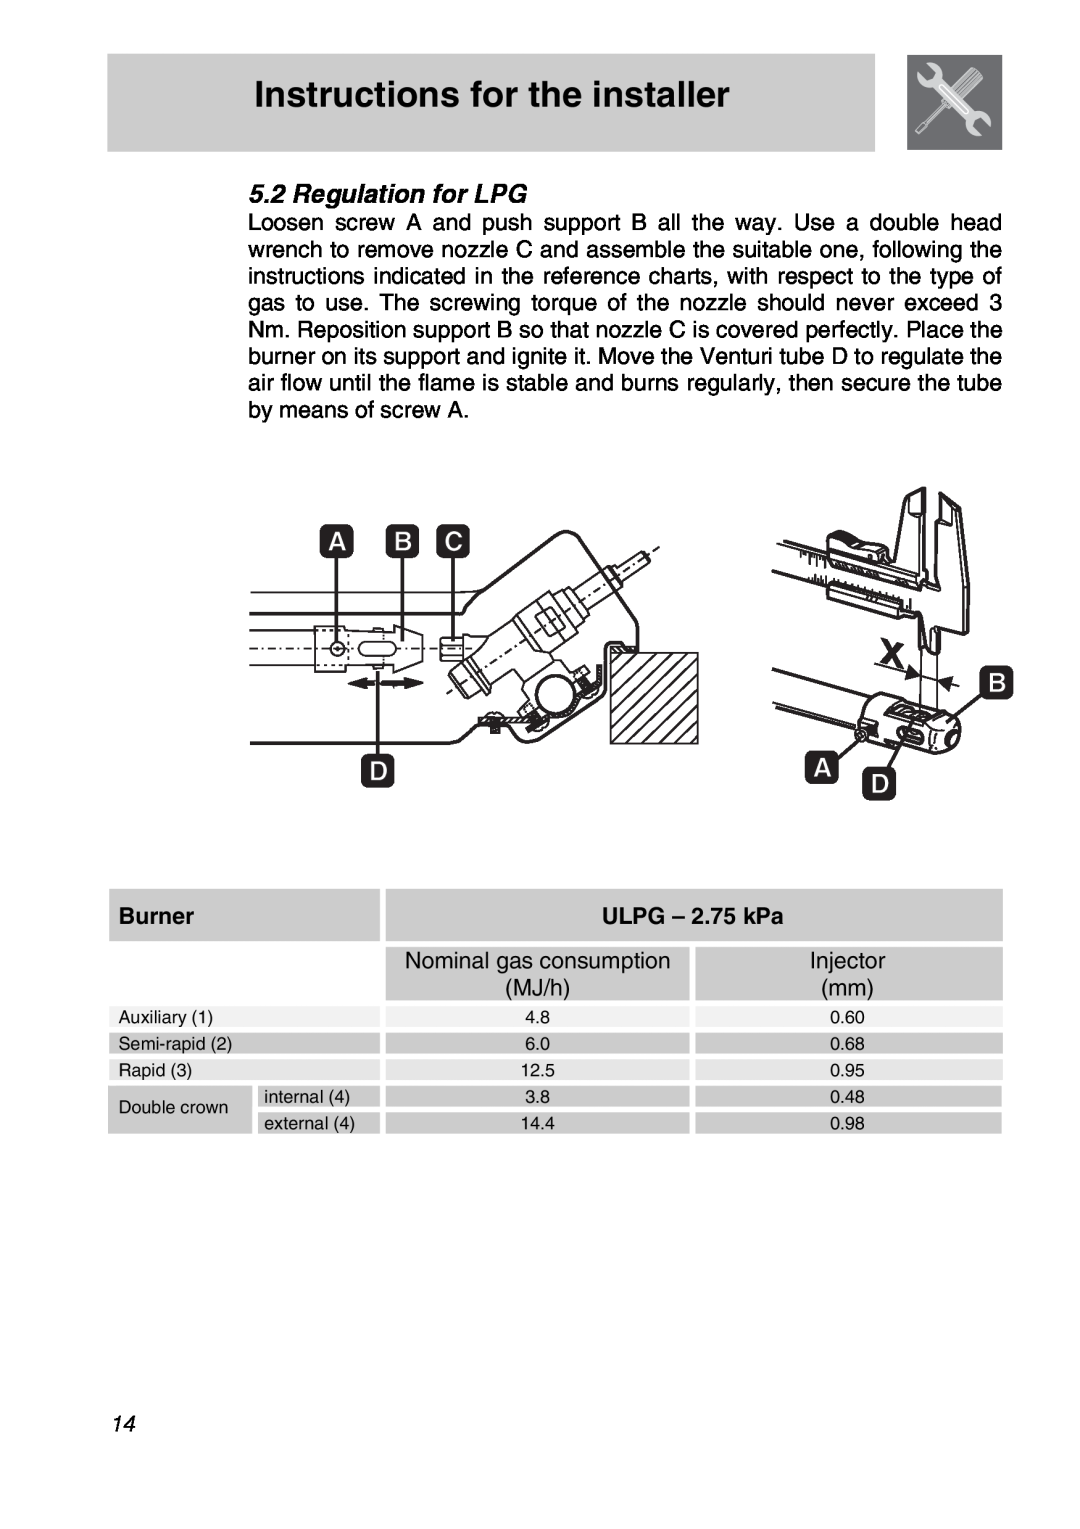 Smeg CIR597X5 manual Instructions for the installer, Regulation for LPG, Burner, ULPG – 2.75 kPa 